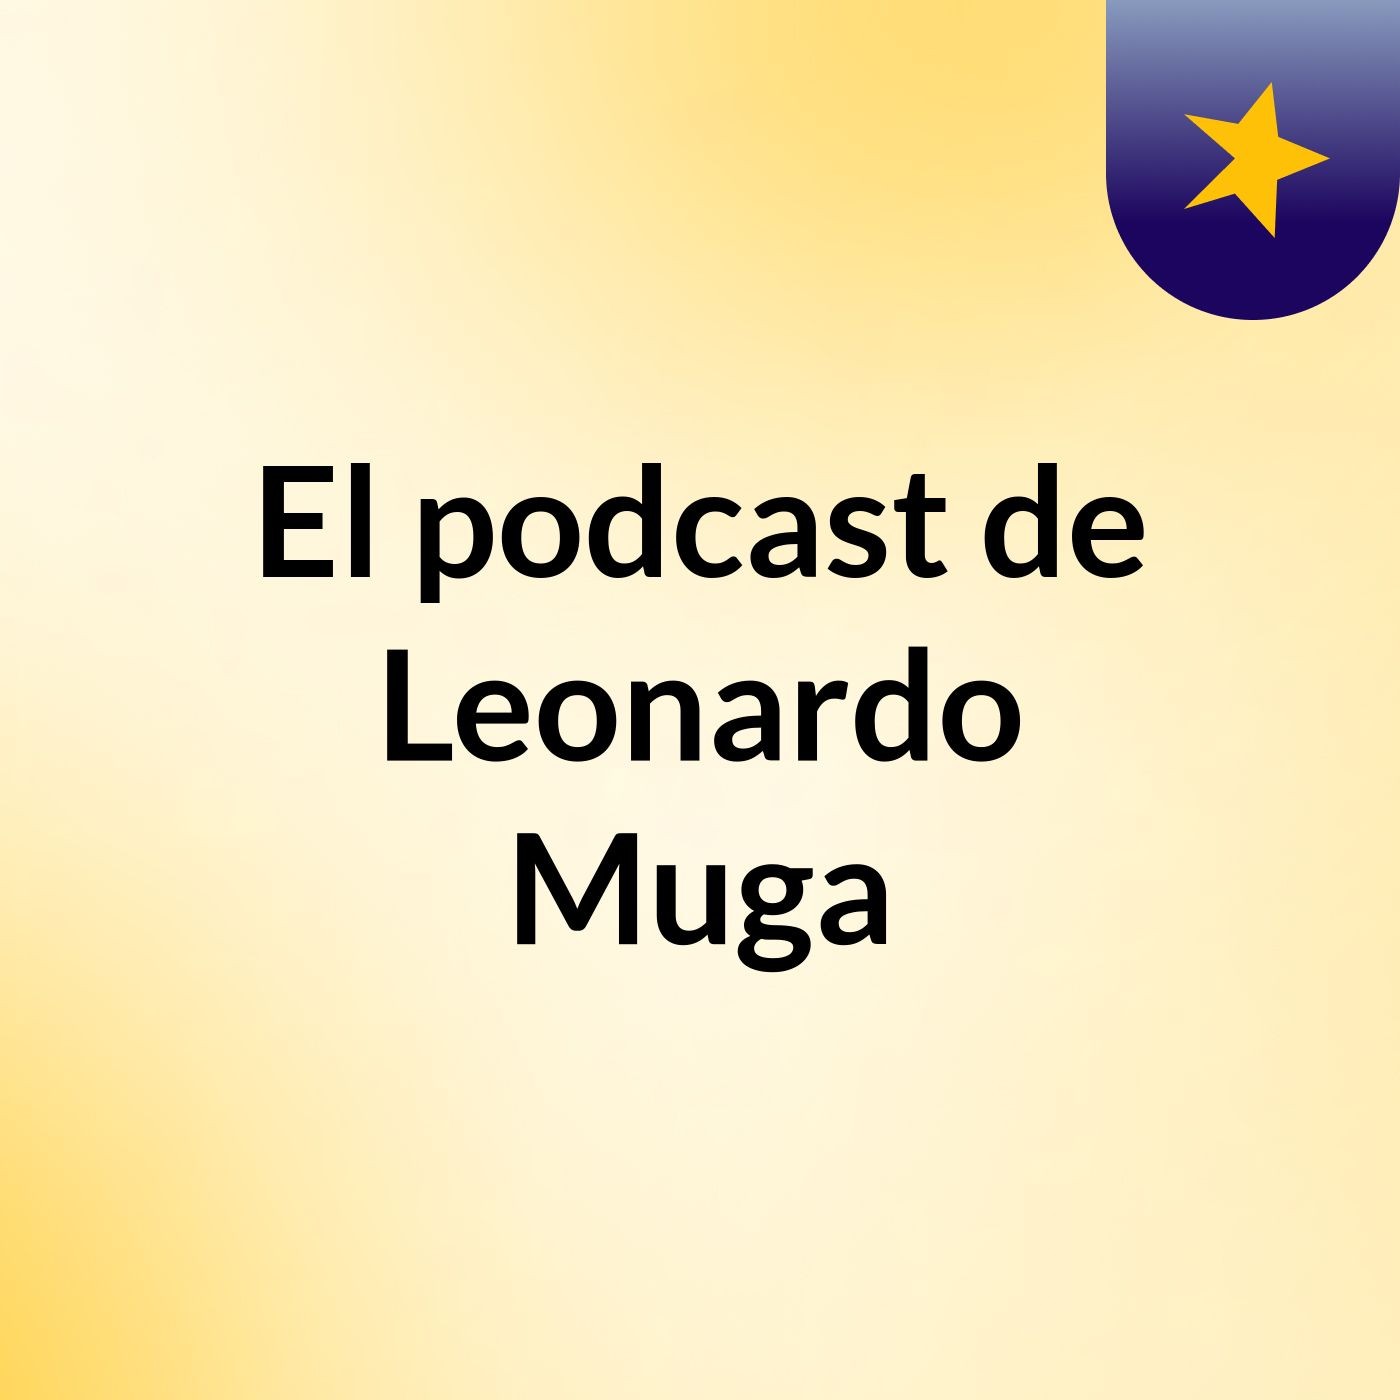 El podcast de Leonardo Muga